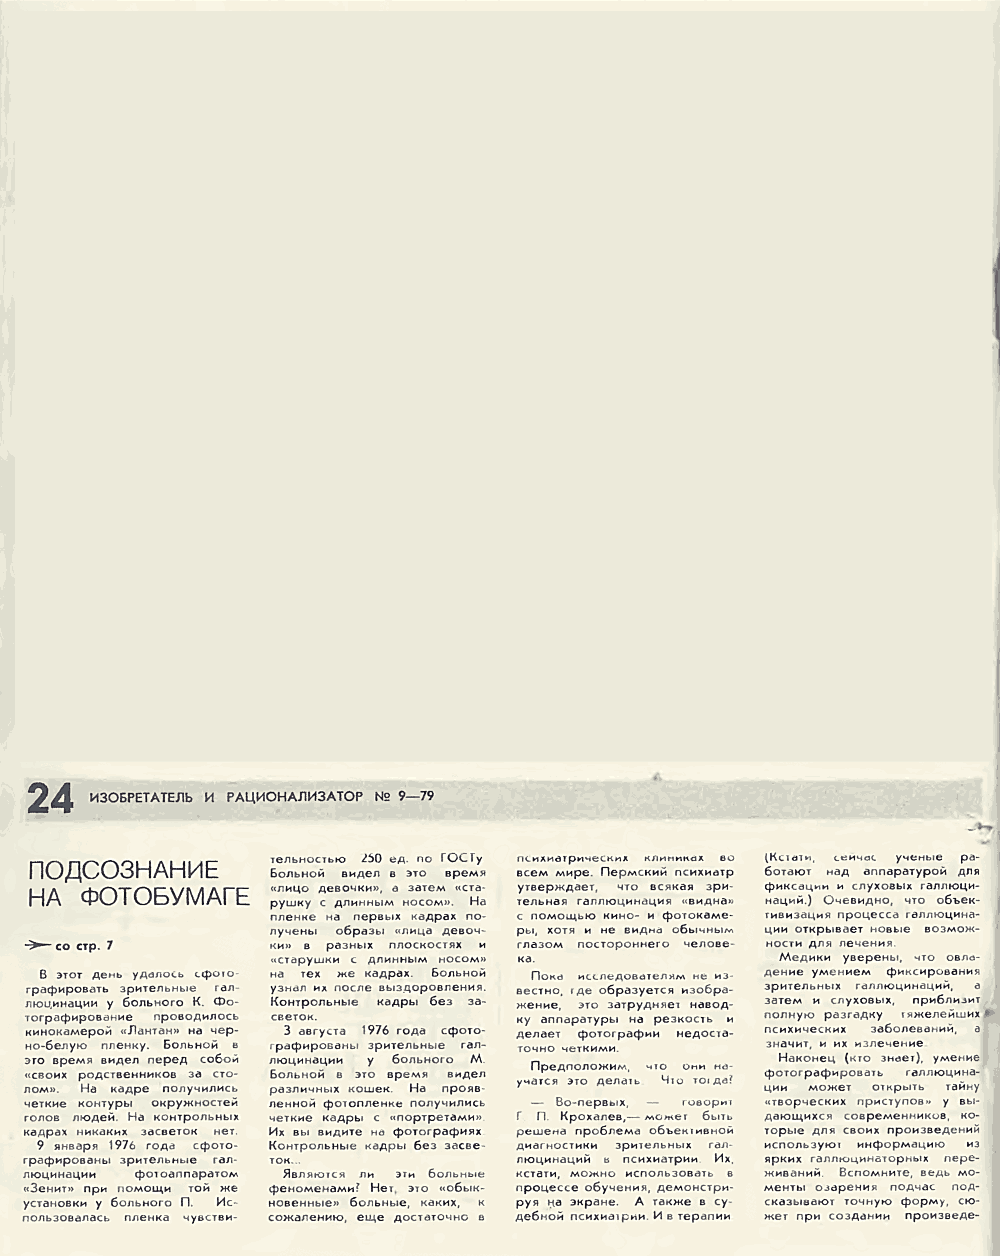 Подсознание на фотобумаге. В. Богатырев. Изобретатель и рационализатор, 1979, №9, с.4-7,24-25. Фотокопия №5